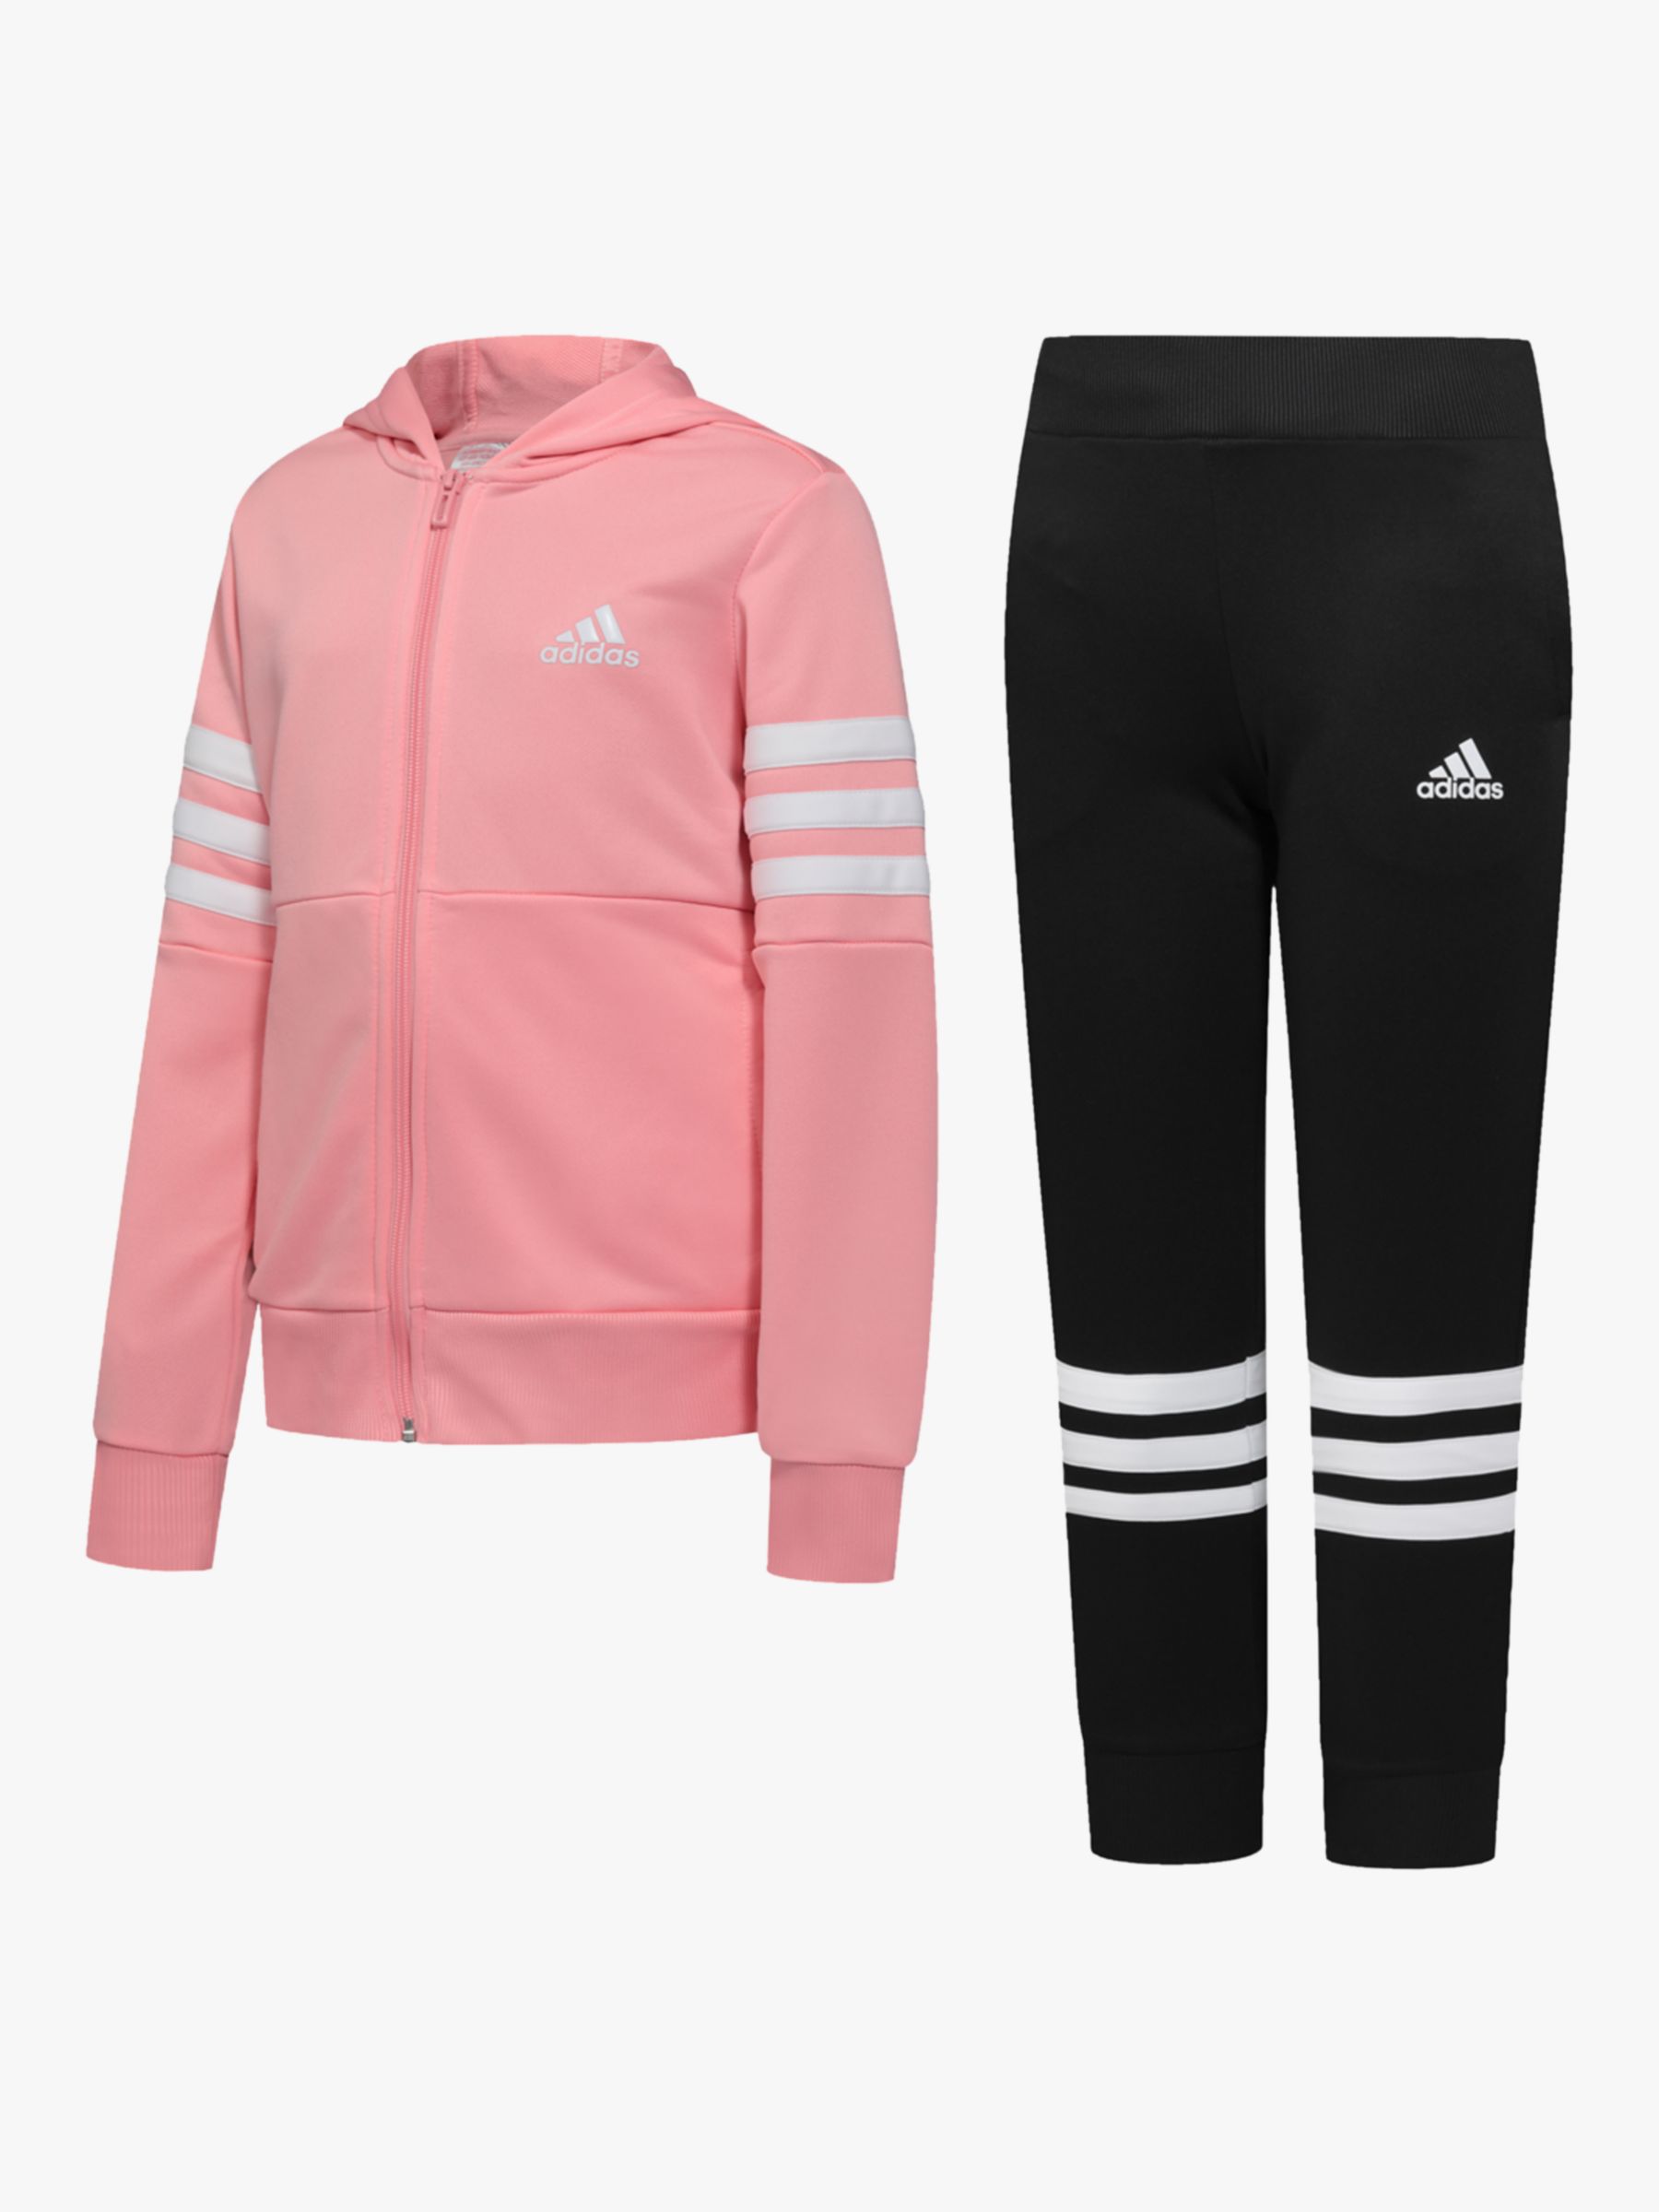 adidas Girls' Tracksuit Set, Pink/Black 